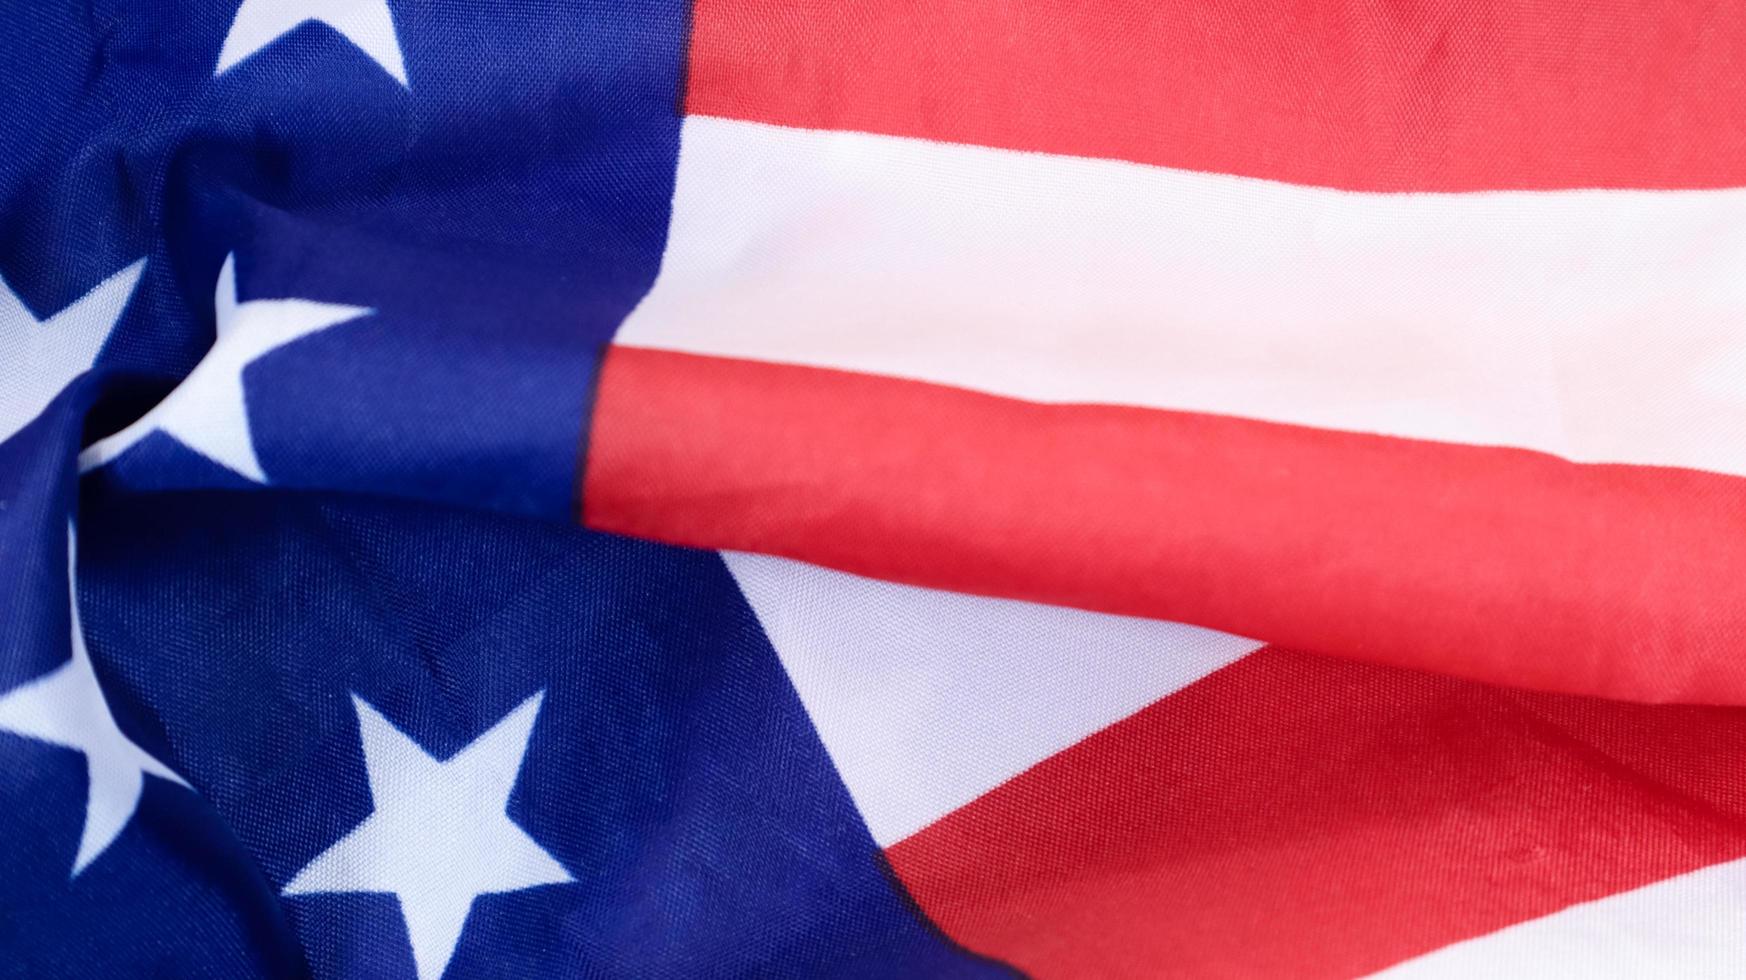 vlag van de verenigde staten van amerika ontworpen tijdens de amerikaanse onafhankelijkheidsoorlog, close-up. foto